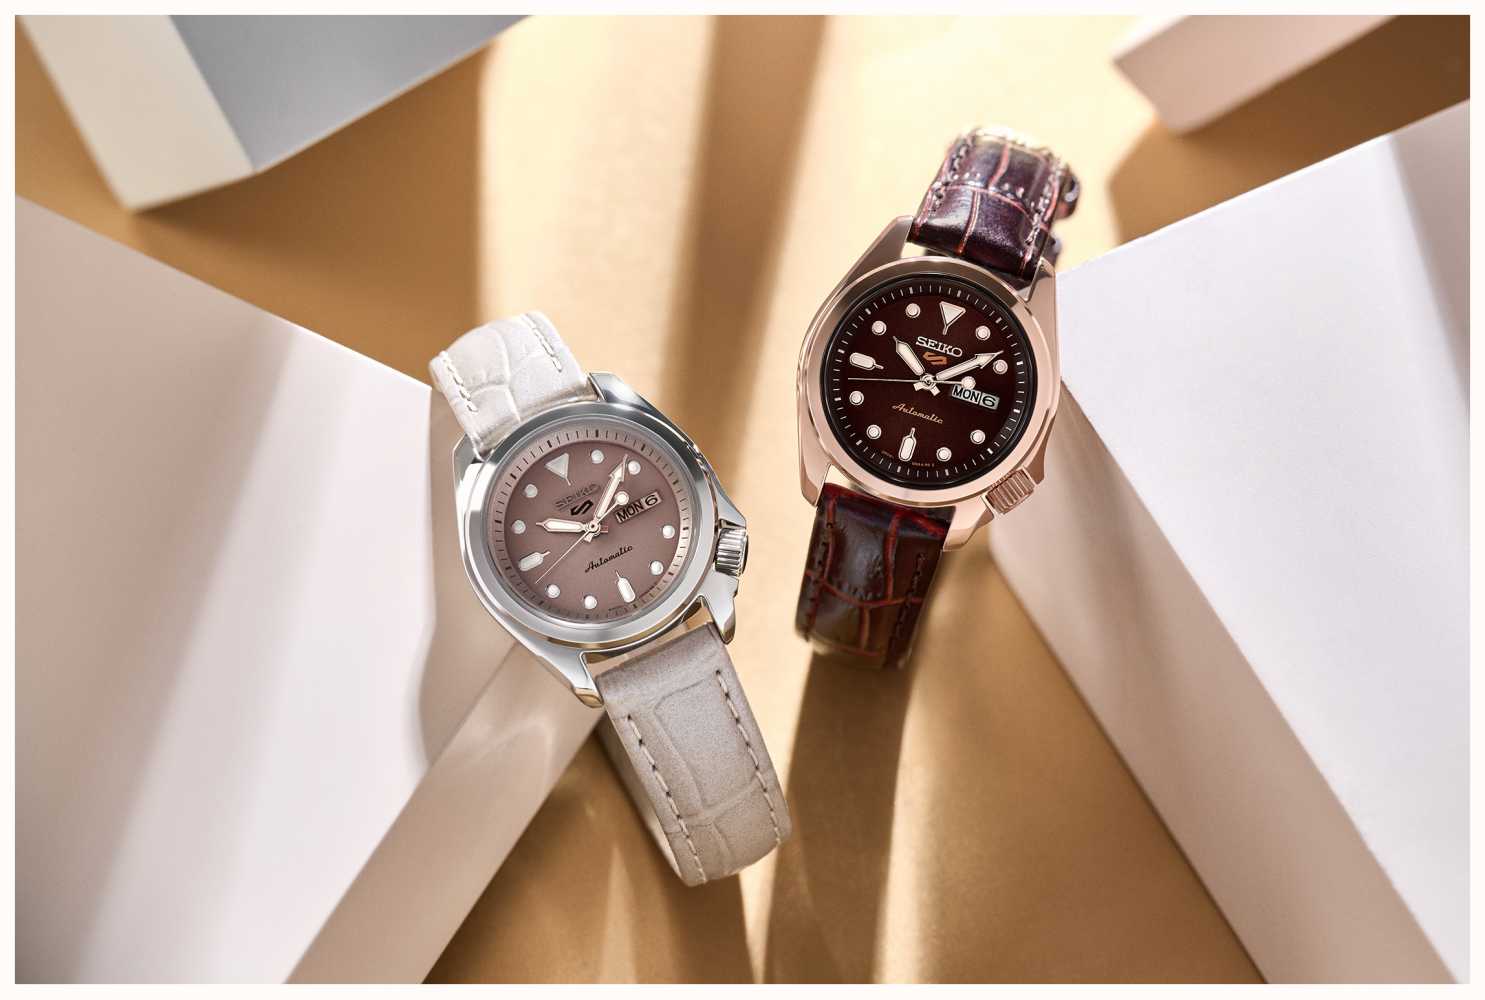 Zifferblatt | Class Beiges Beiges SRE005K1 Sport 5 First Watches™ | 28mm AUT - | Lederband Kompakt Seiko |